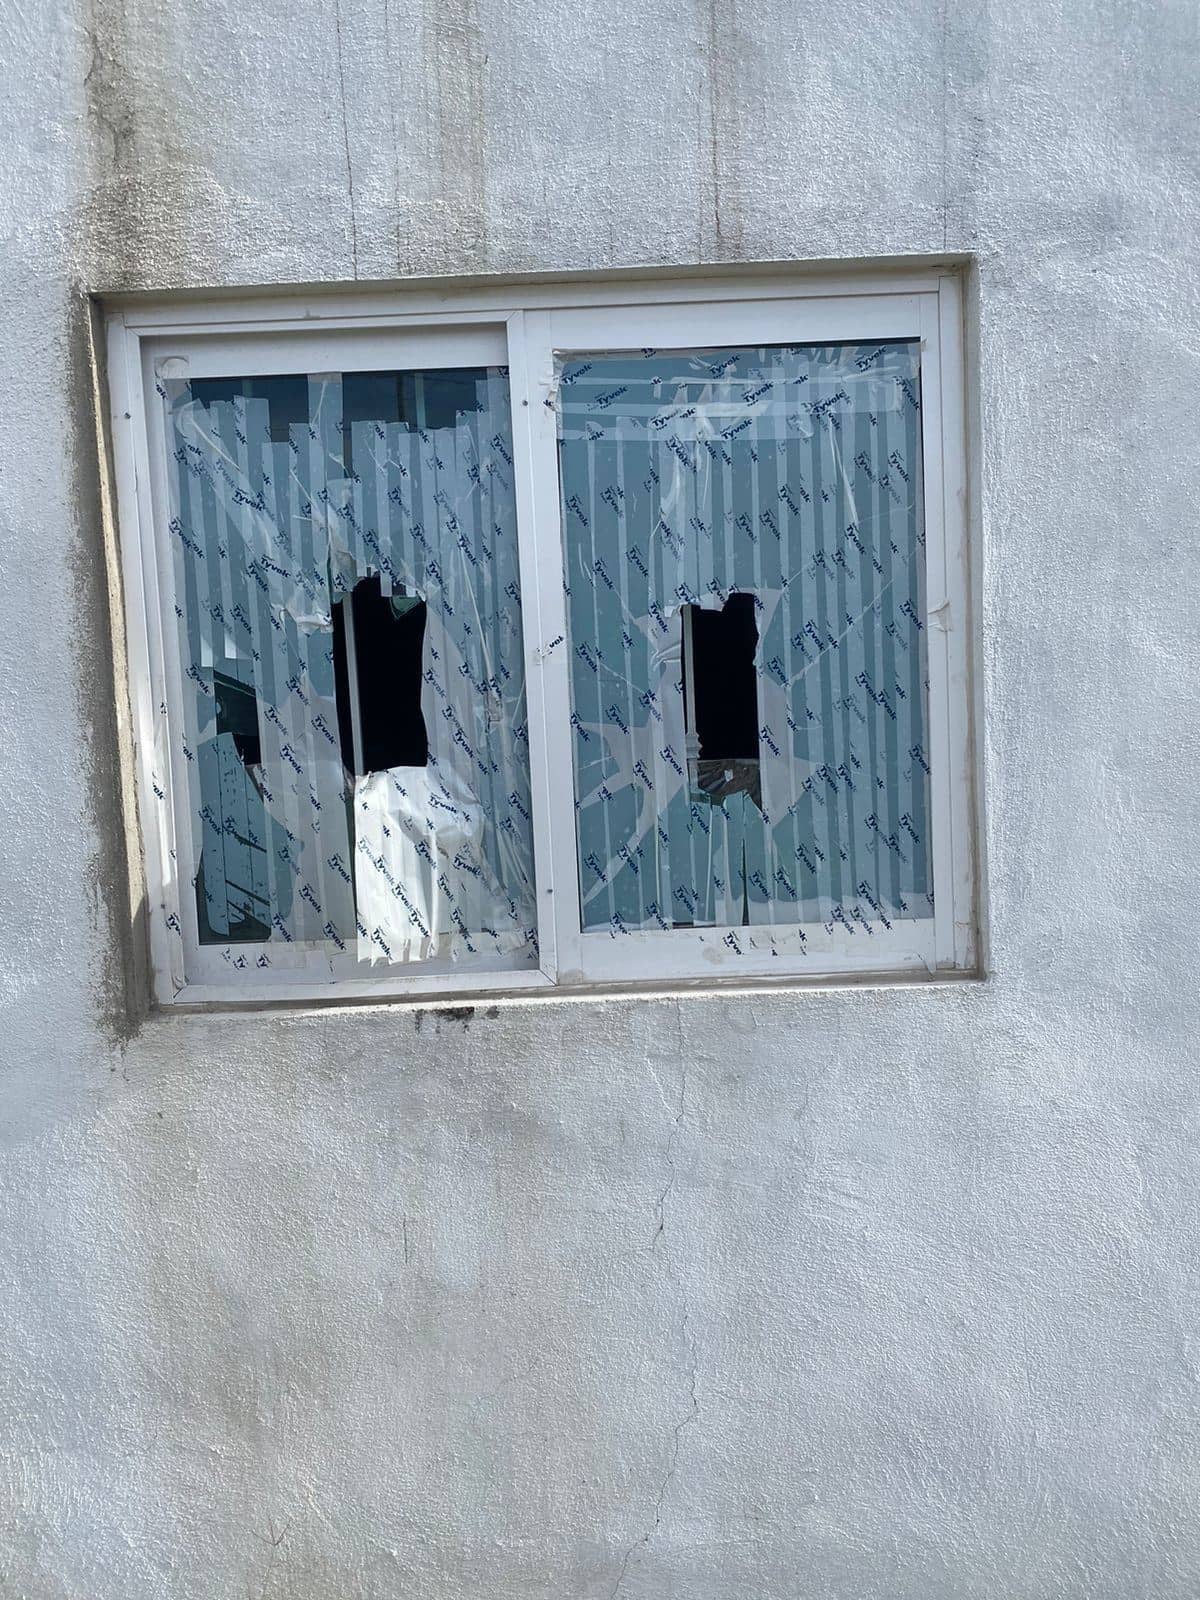 Destroza vidrios de vivienda ajena